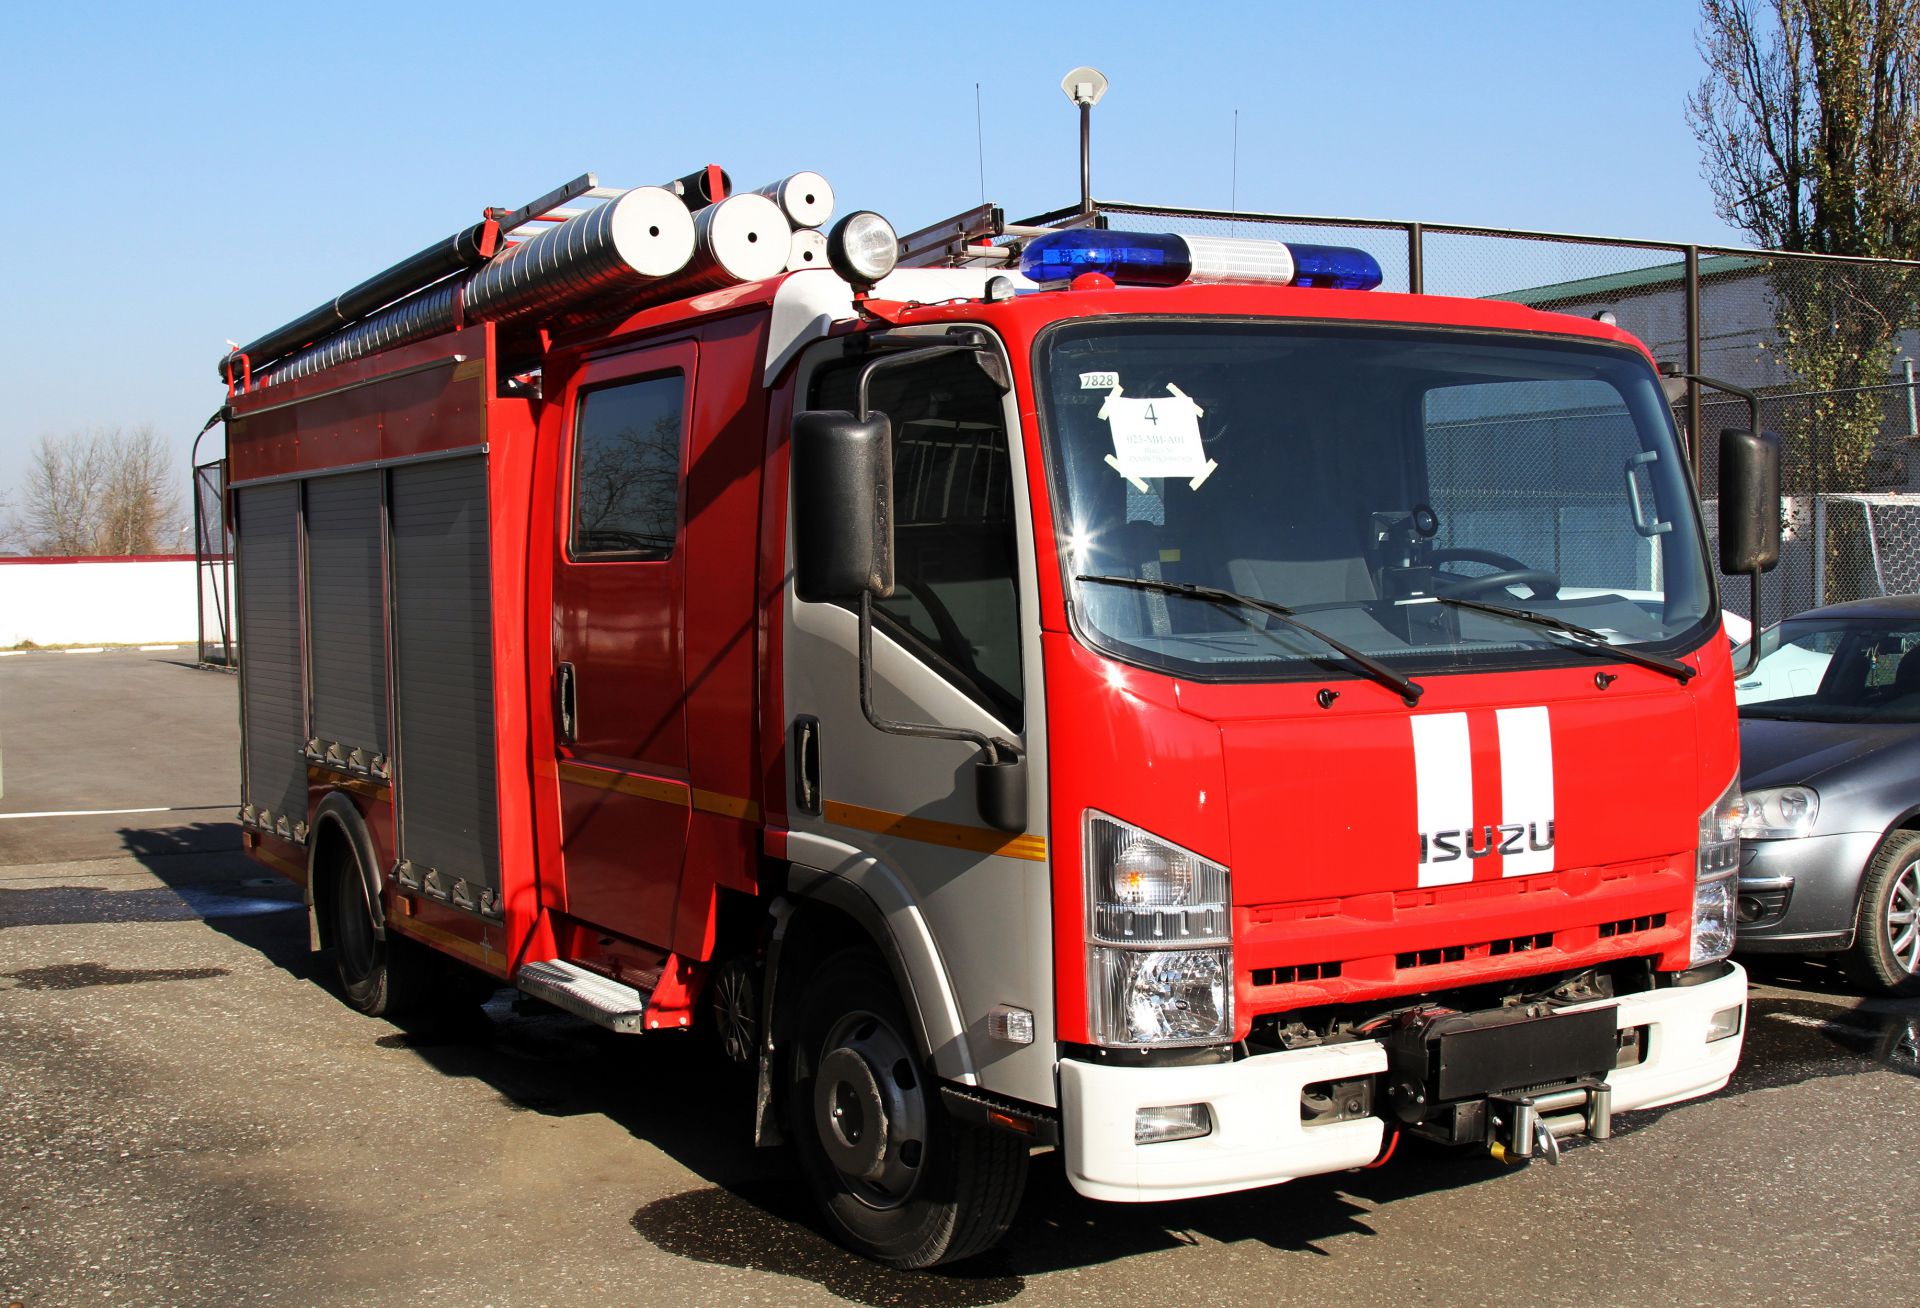 Аварийно спасательные машины. Исудзу пожарная машина. Аварийно спасательный автомобиль Исузу. Исузу пожарный автомобиль.